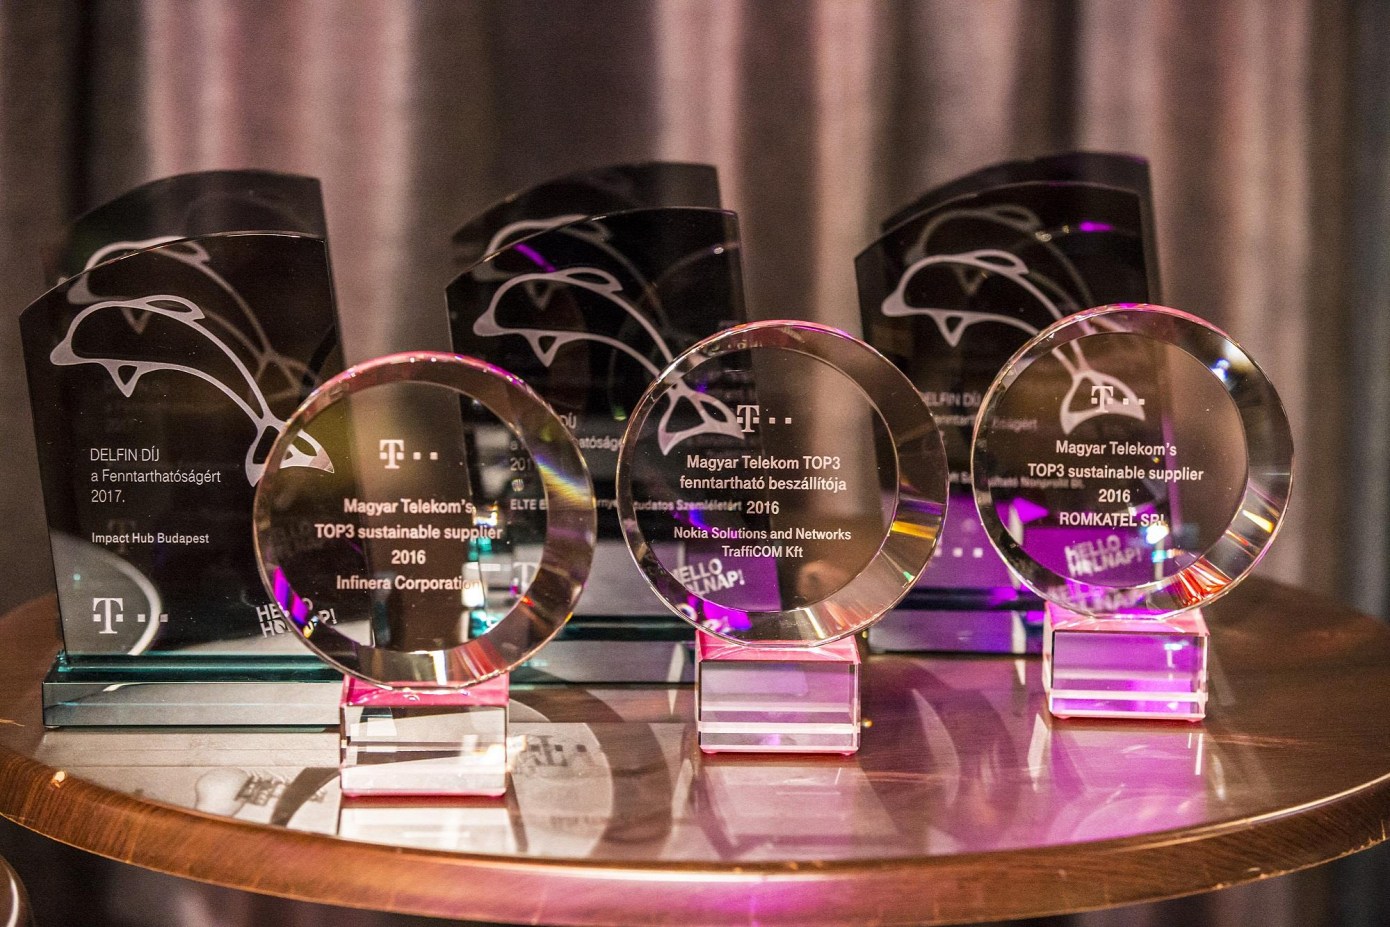 Delfin díj 2017 - díjak